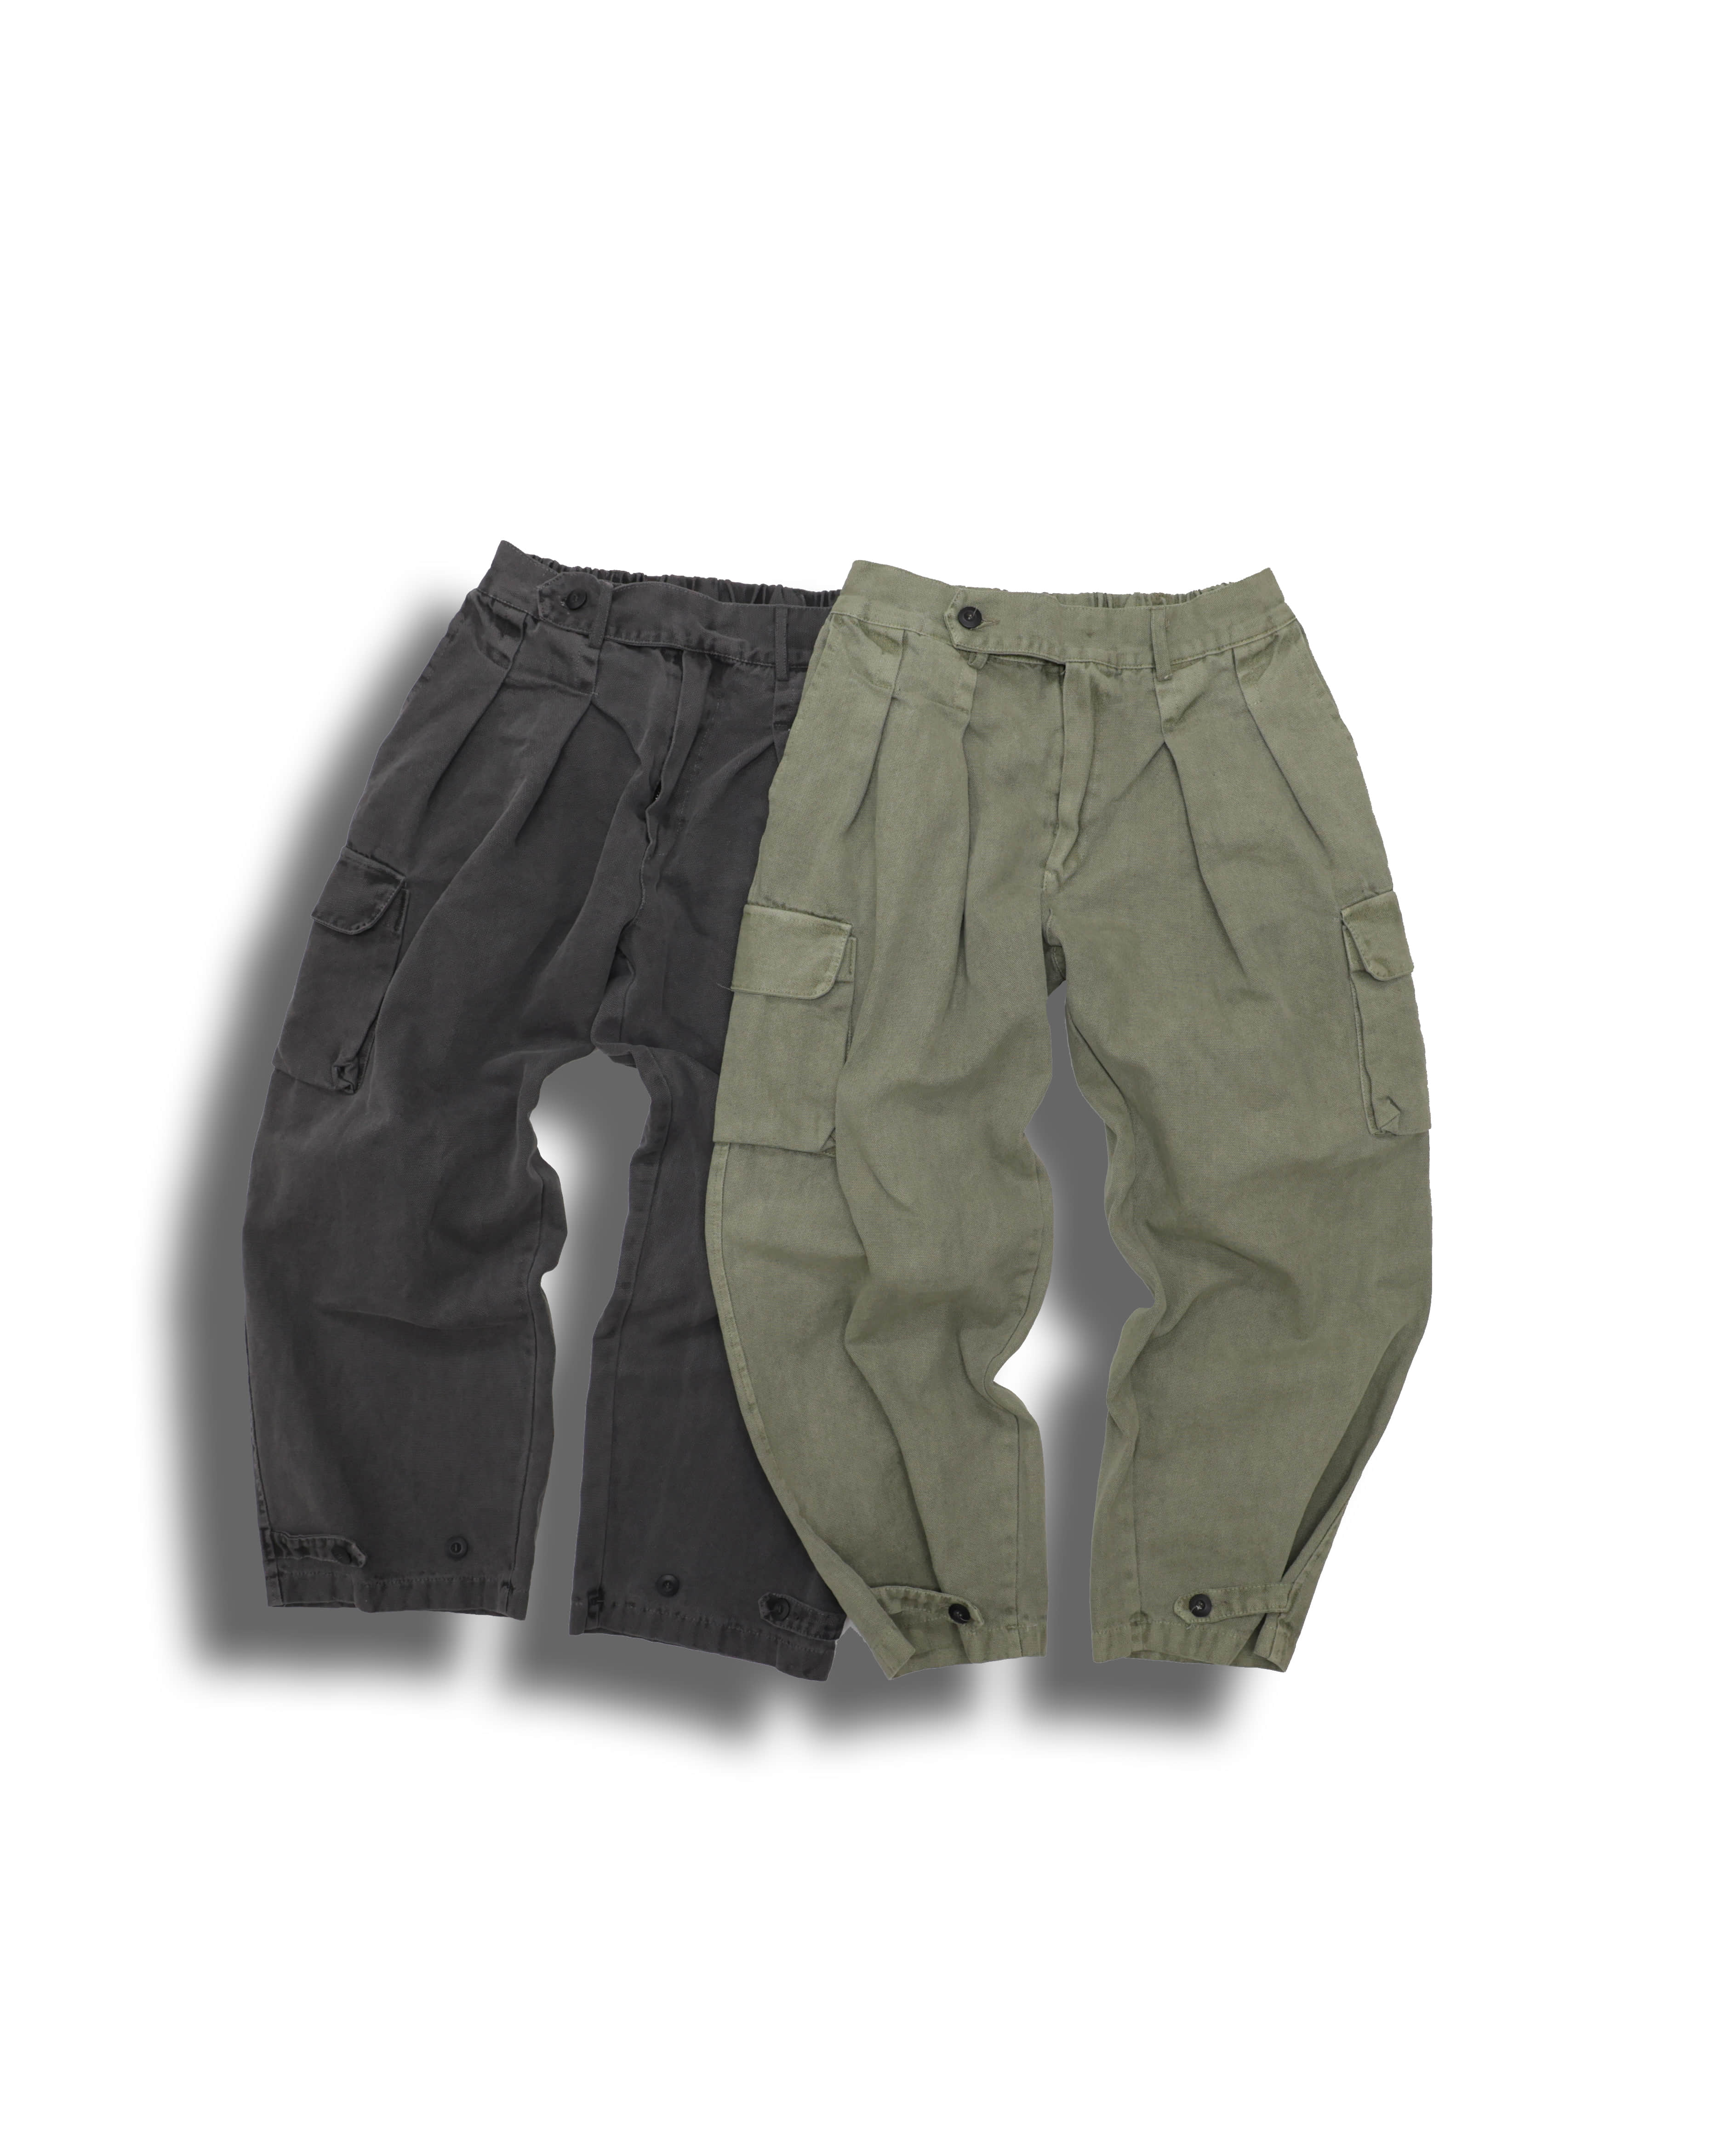 Garment Button Cargo Pants (Khaki/Charcoal)